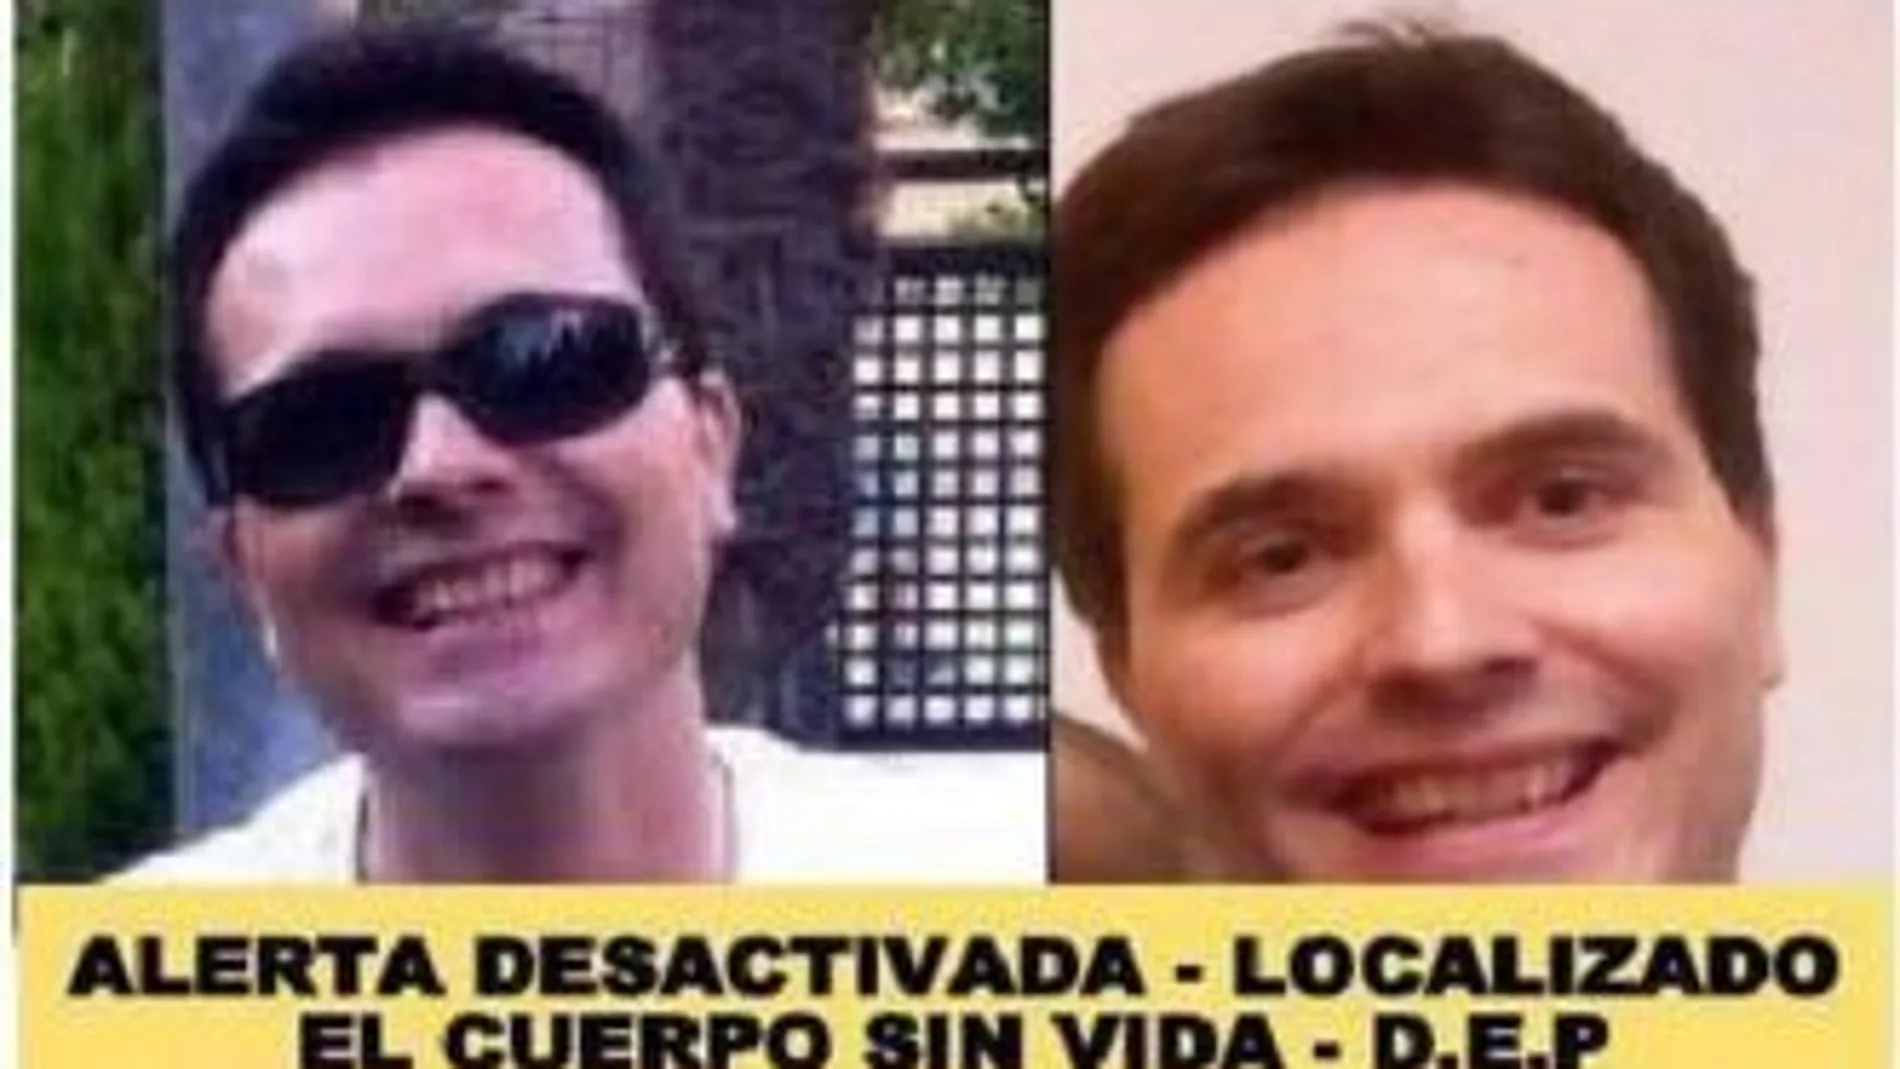 Hallan muerto al hombre de 44 años, con la enfermedad de Behet, desaparecido el jueves en Madrid